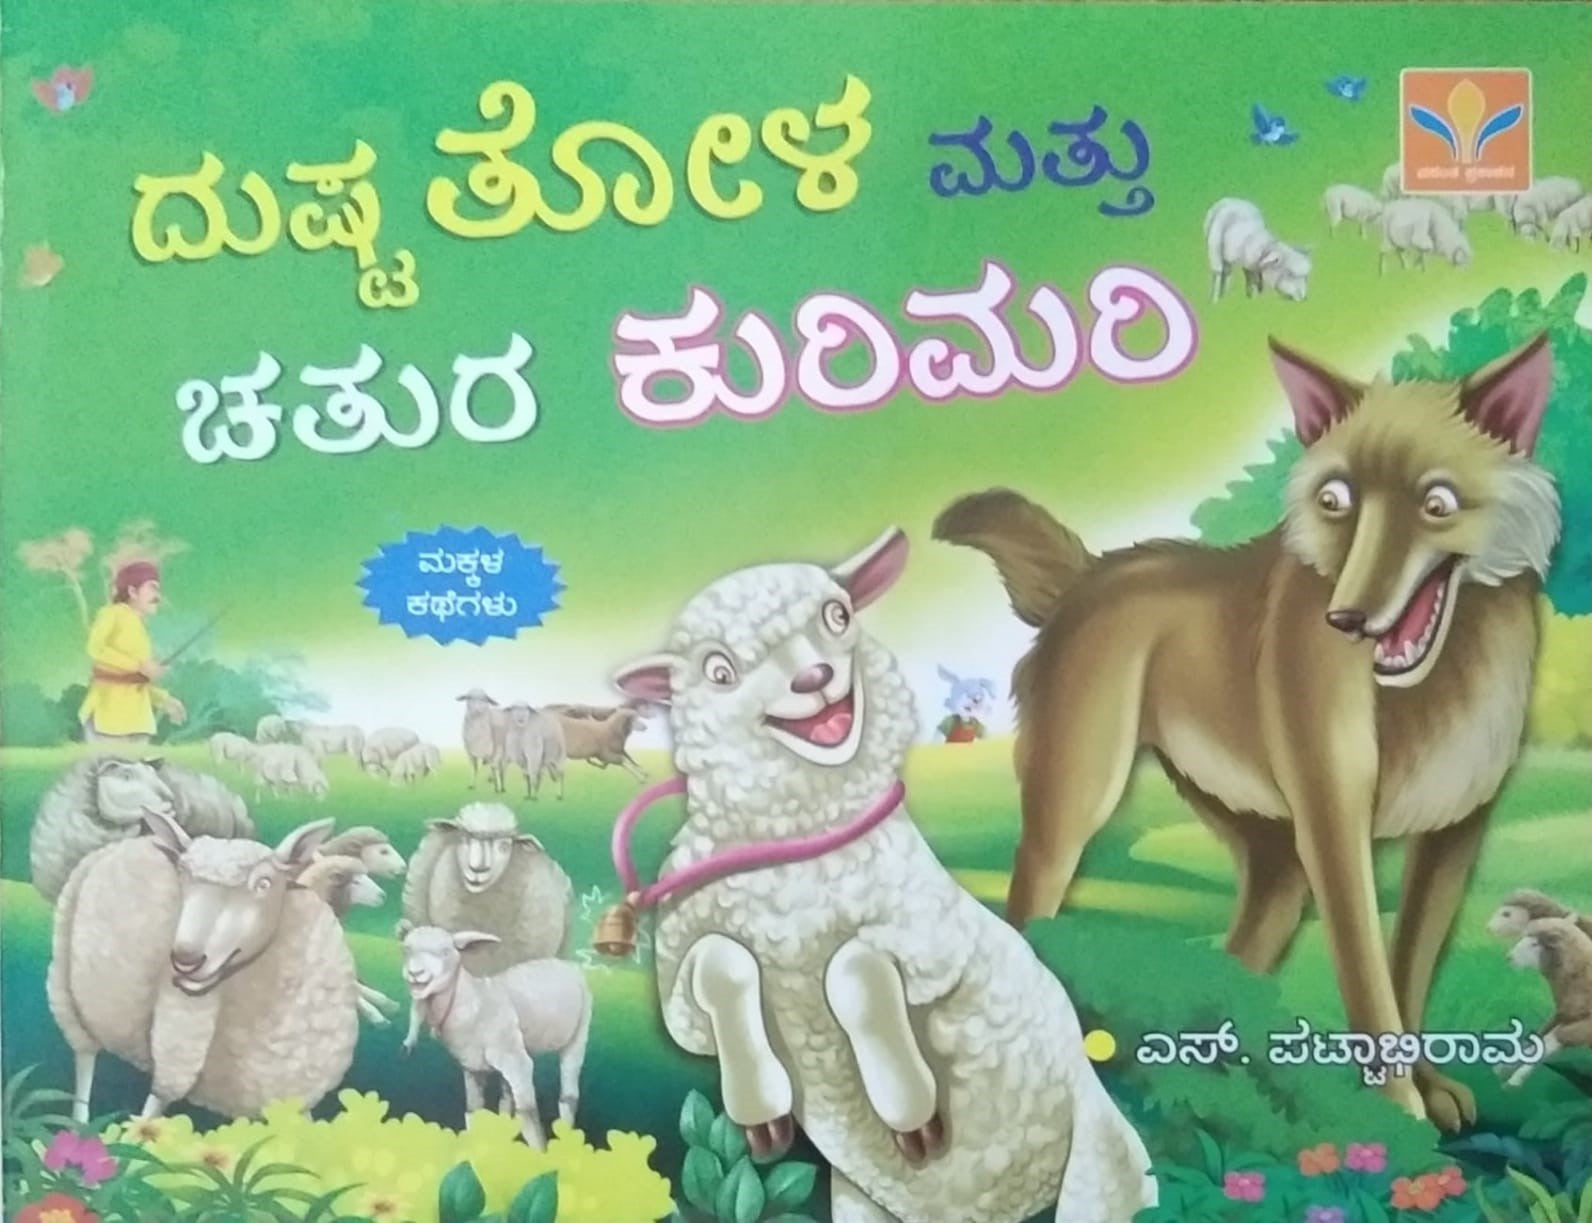 Dushta Tola Mattu Chatura Kurimari is Children's Stories Book, Edited by S. Pattabhirama, Published by Vasantha Prakashana